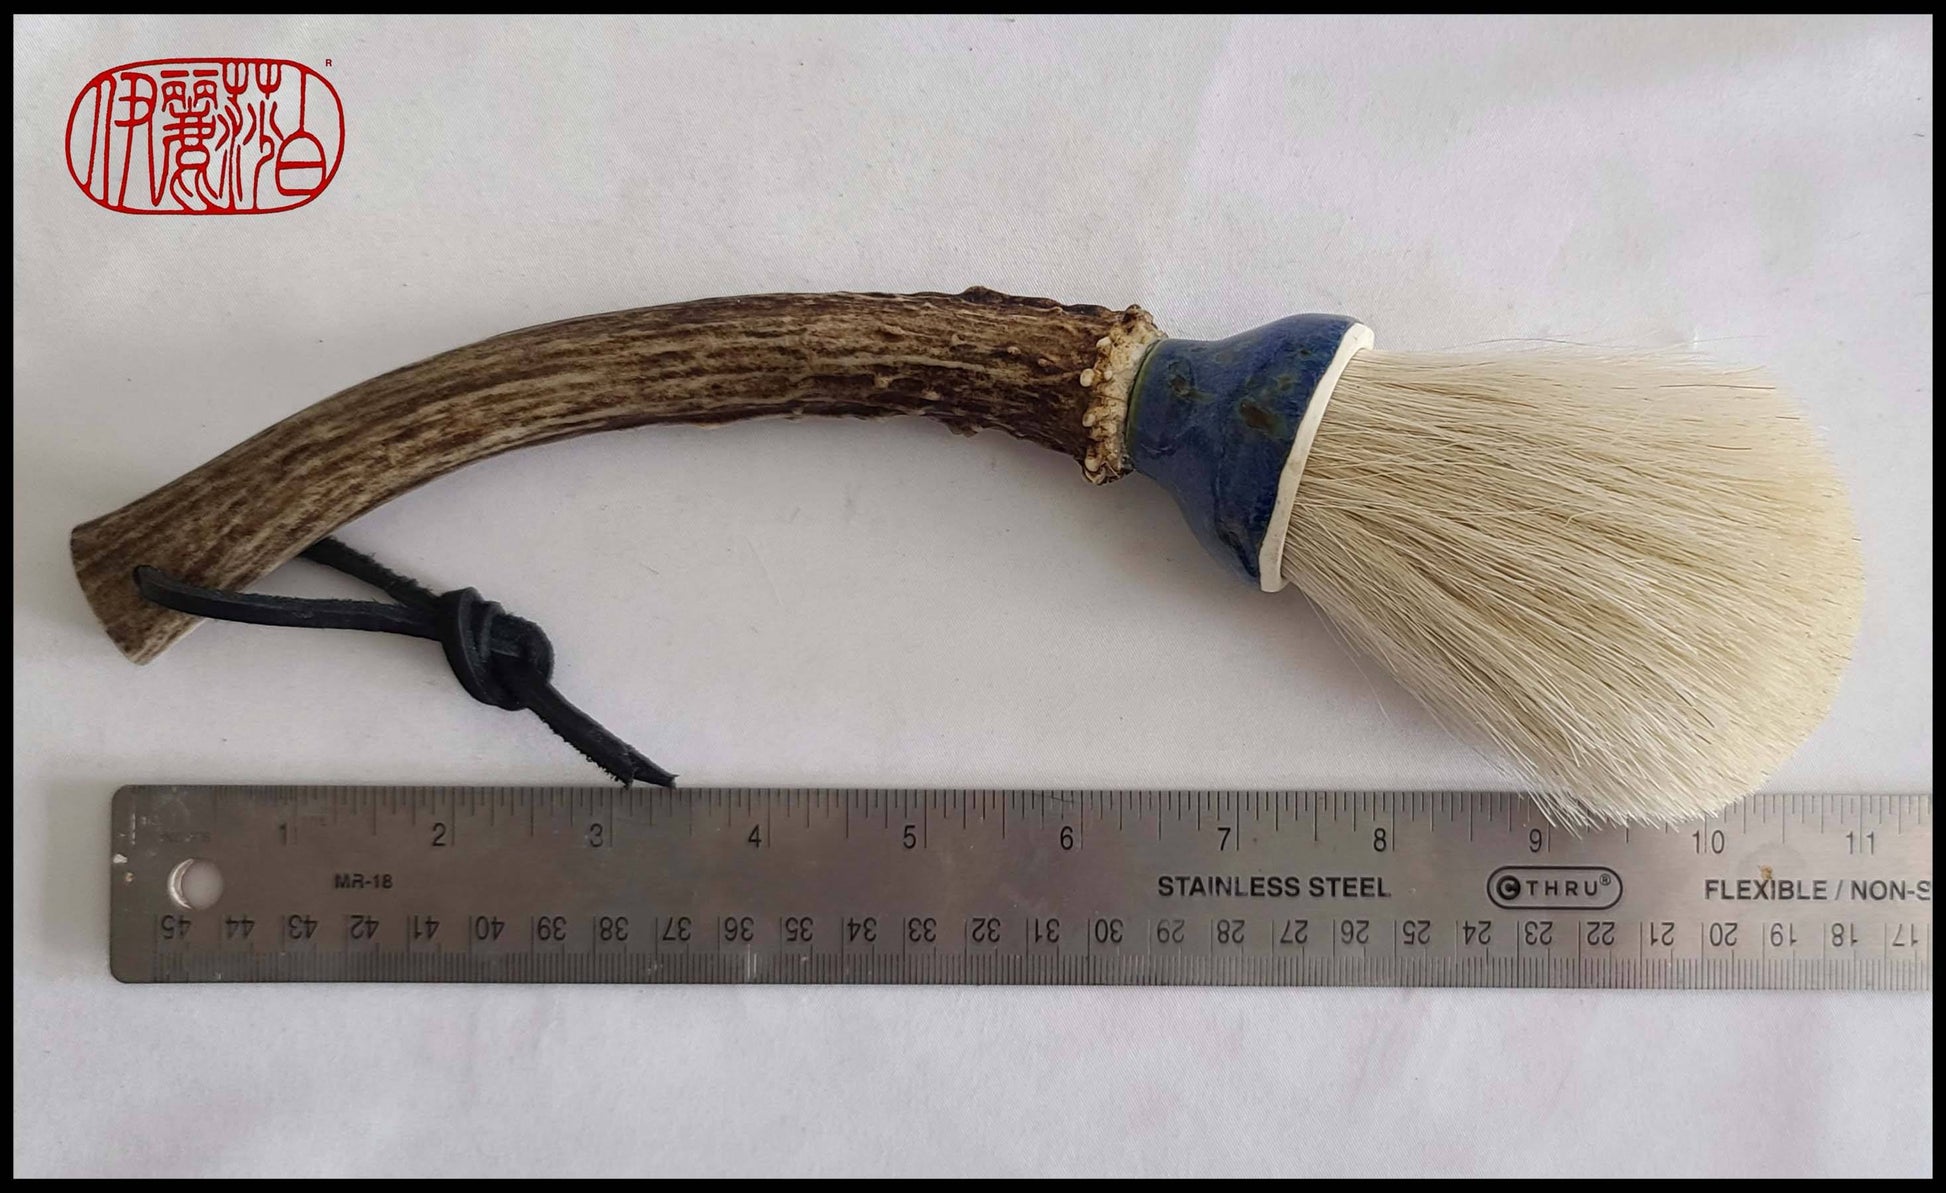 White Horsehair Mop Paintbrush with Deer Antler Handle Art Supplies Elizabeth Schowachert Art